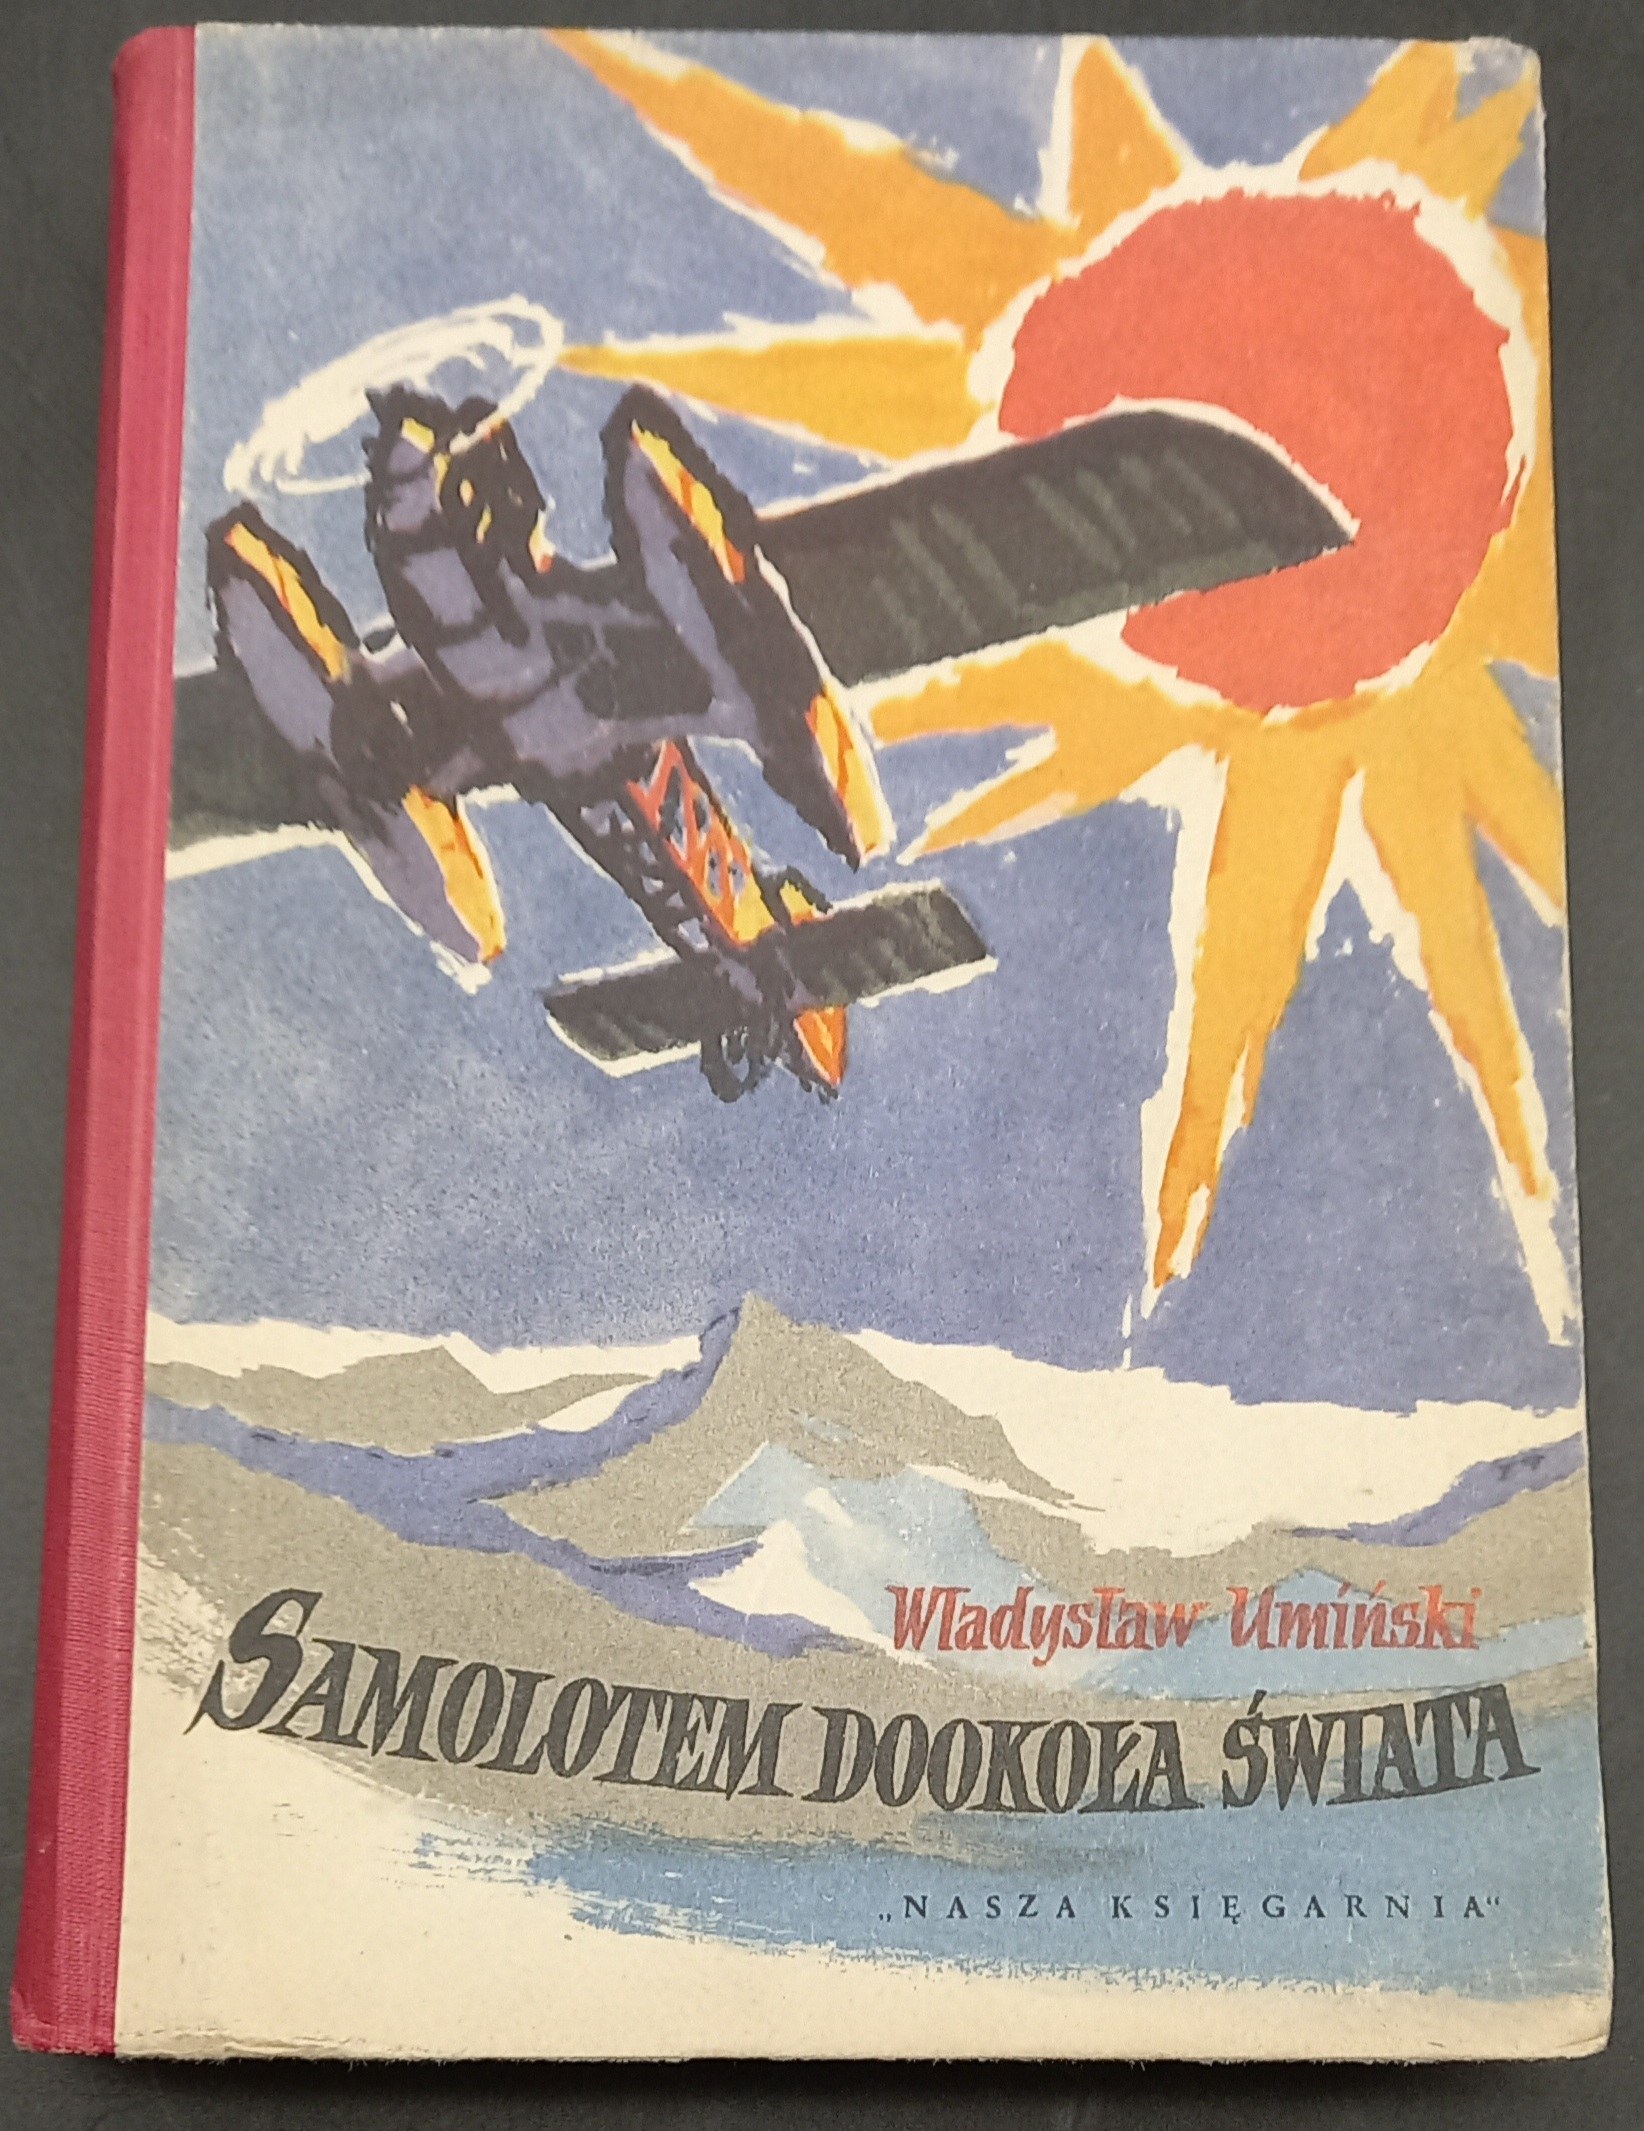 Samolotem Dookoła świata Władysław Umiński Ilustracje Mateusz Gawryś Wydanie I Aukcja 9713